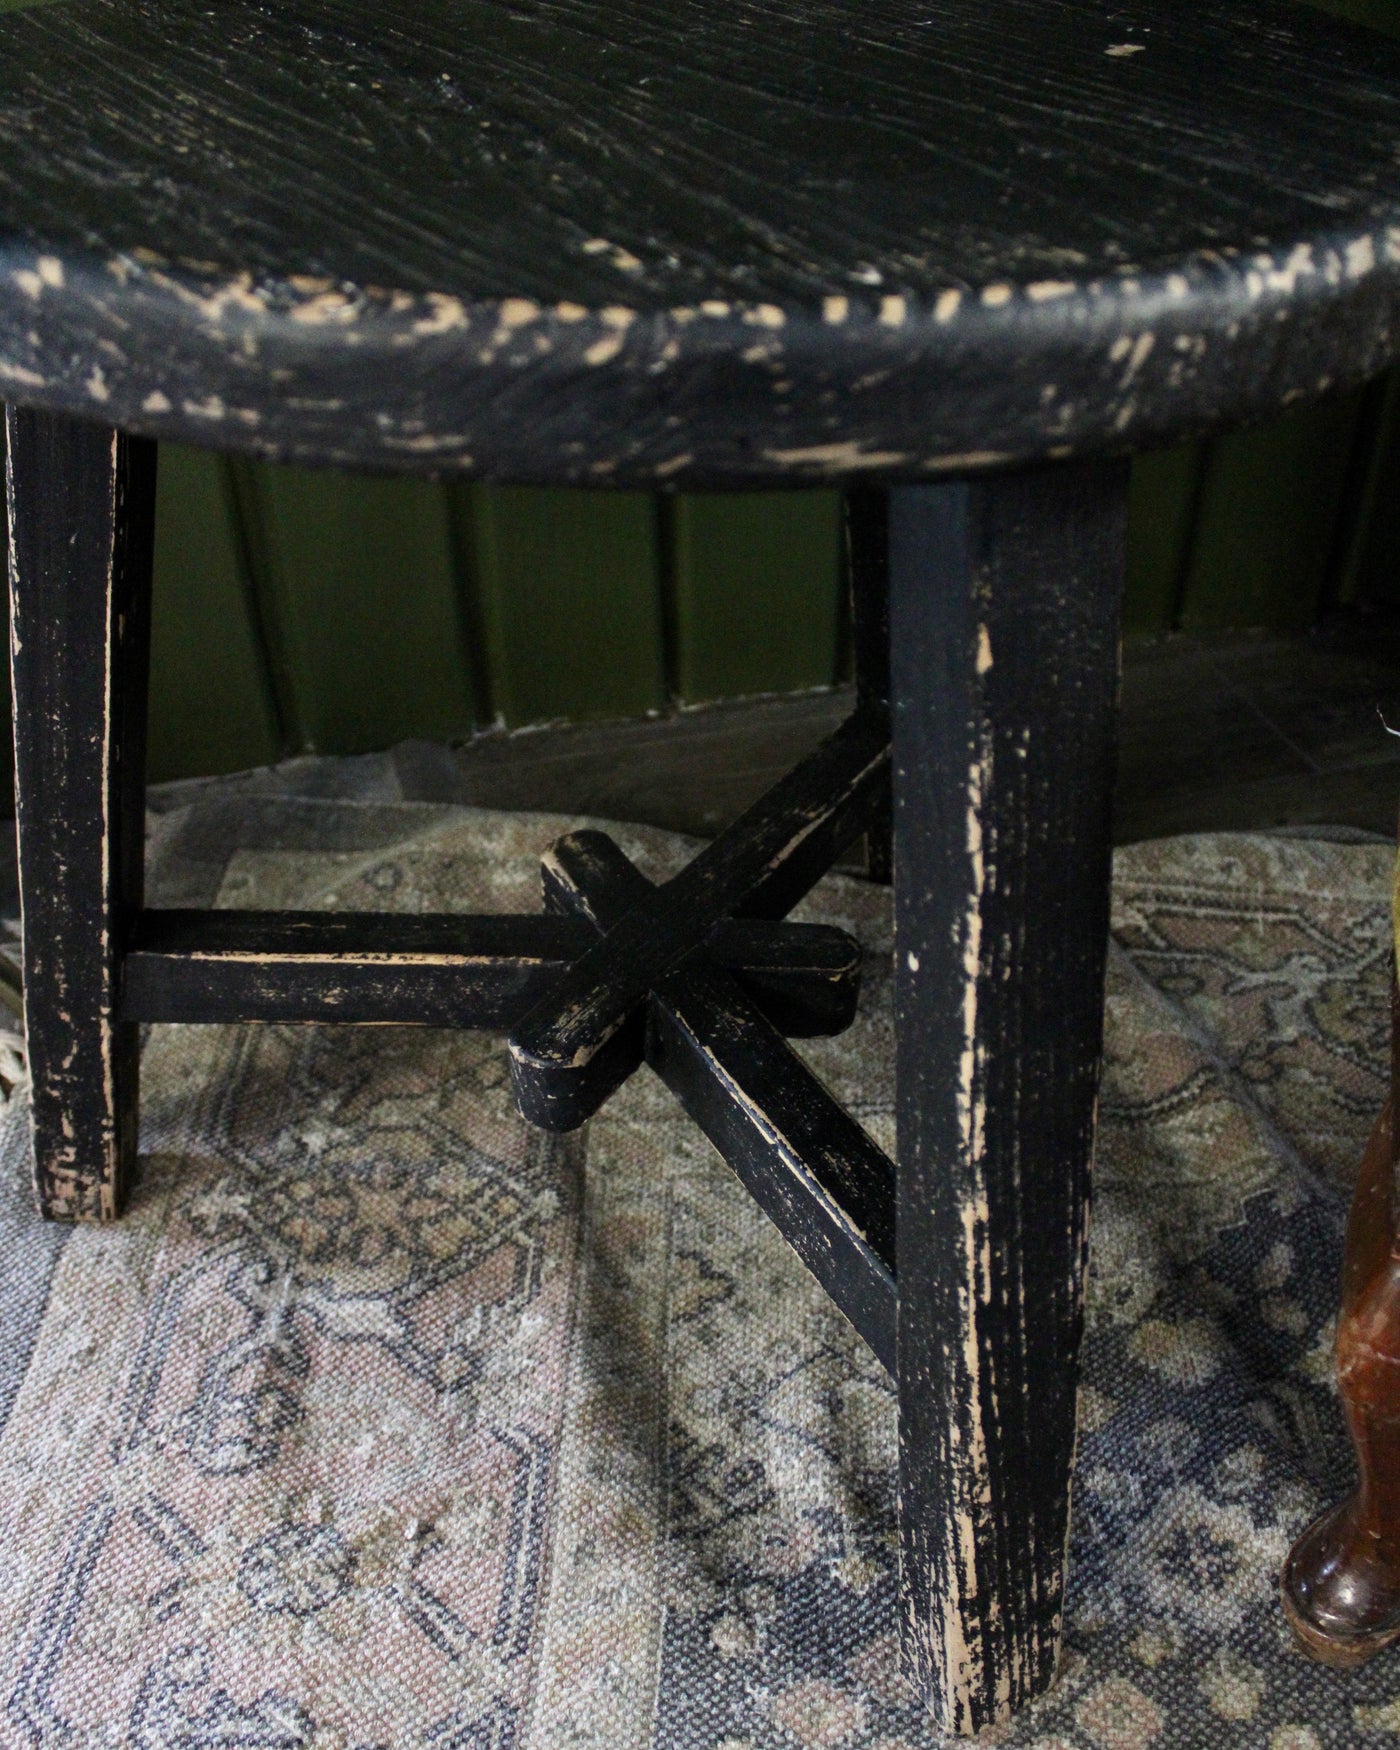 Black Vintage Wooden Table